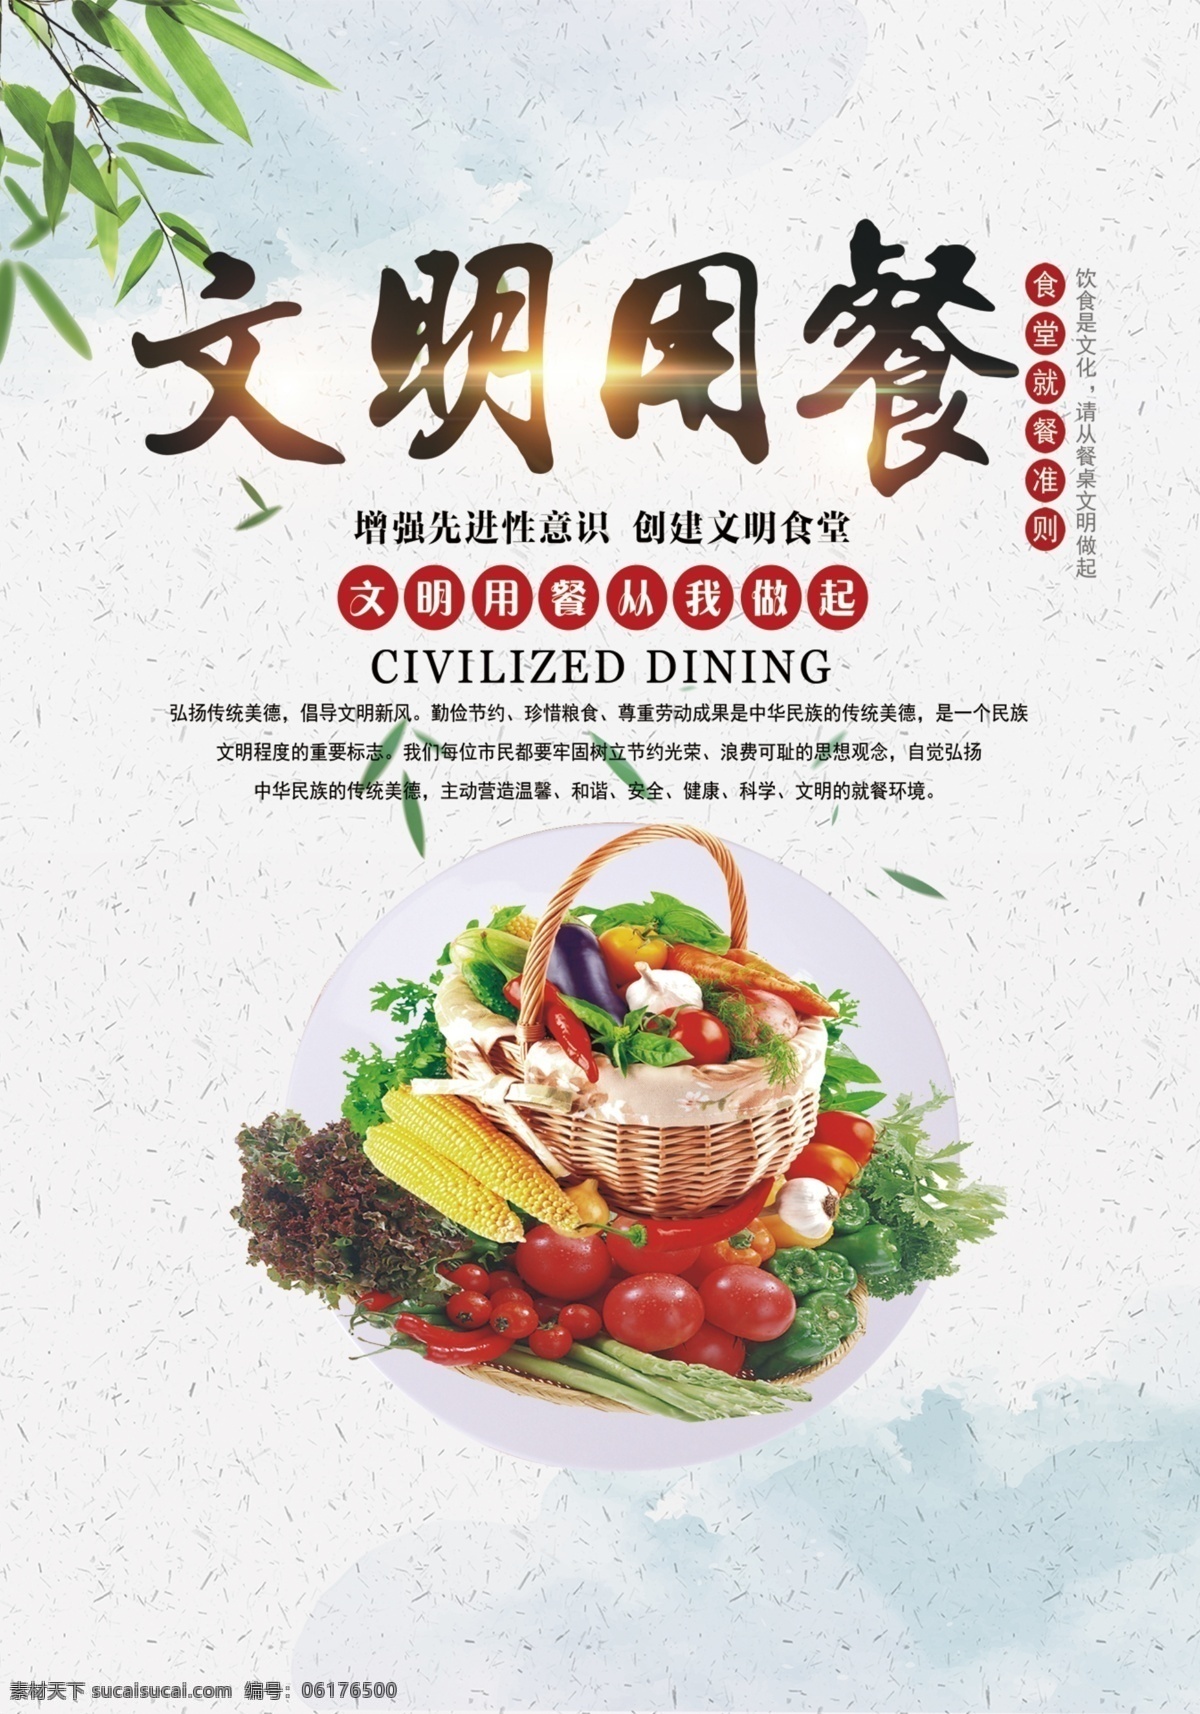 文明就餐 餐厅 文化 食堂文化 展板 展架 写真 节约粮食 宣传